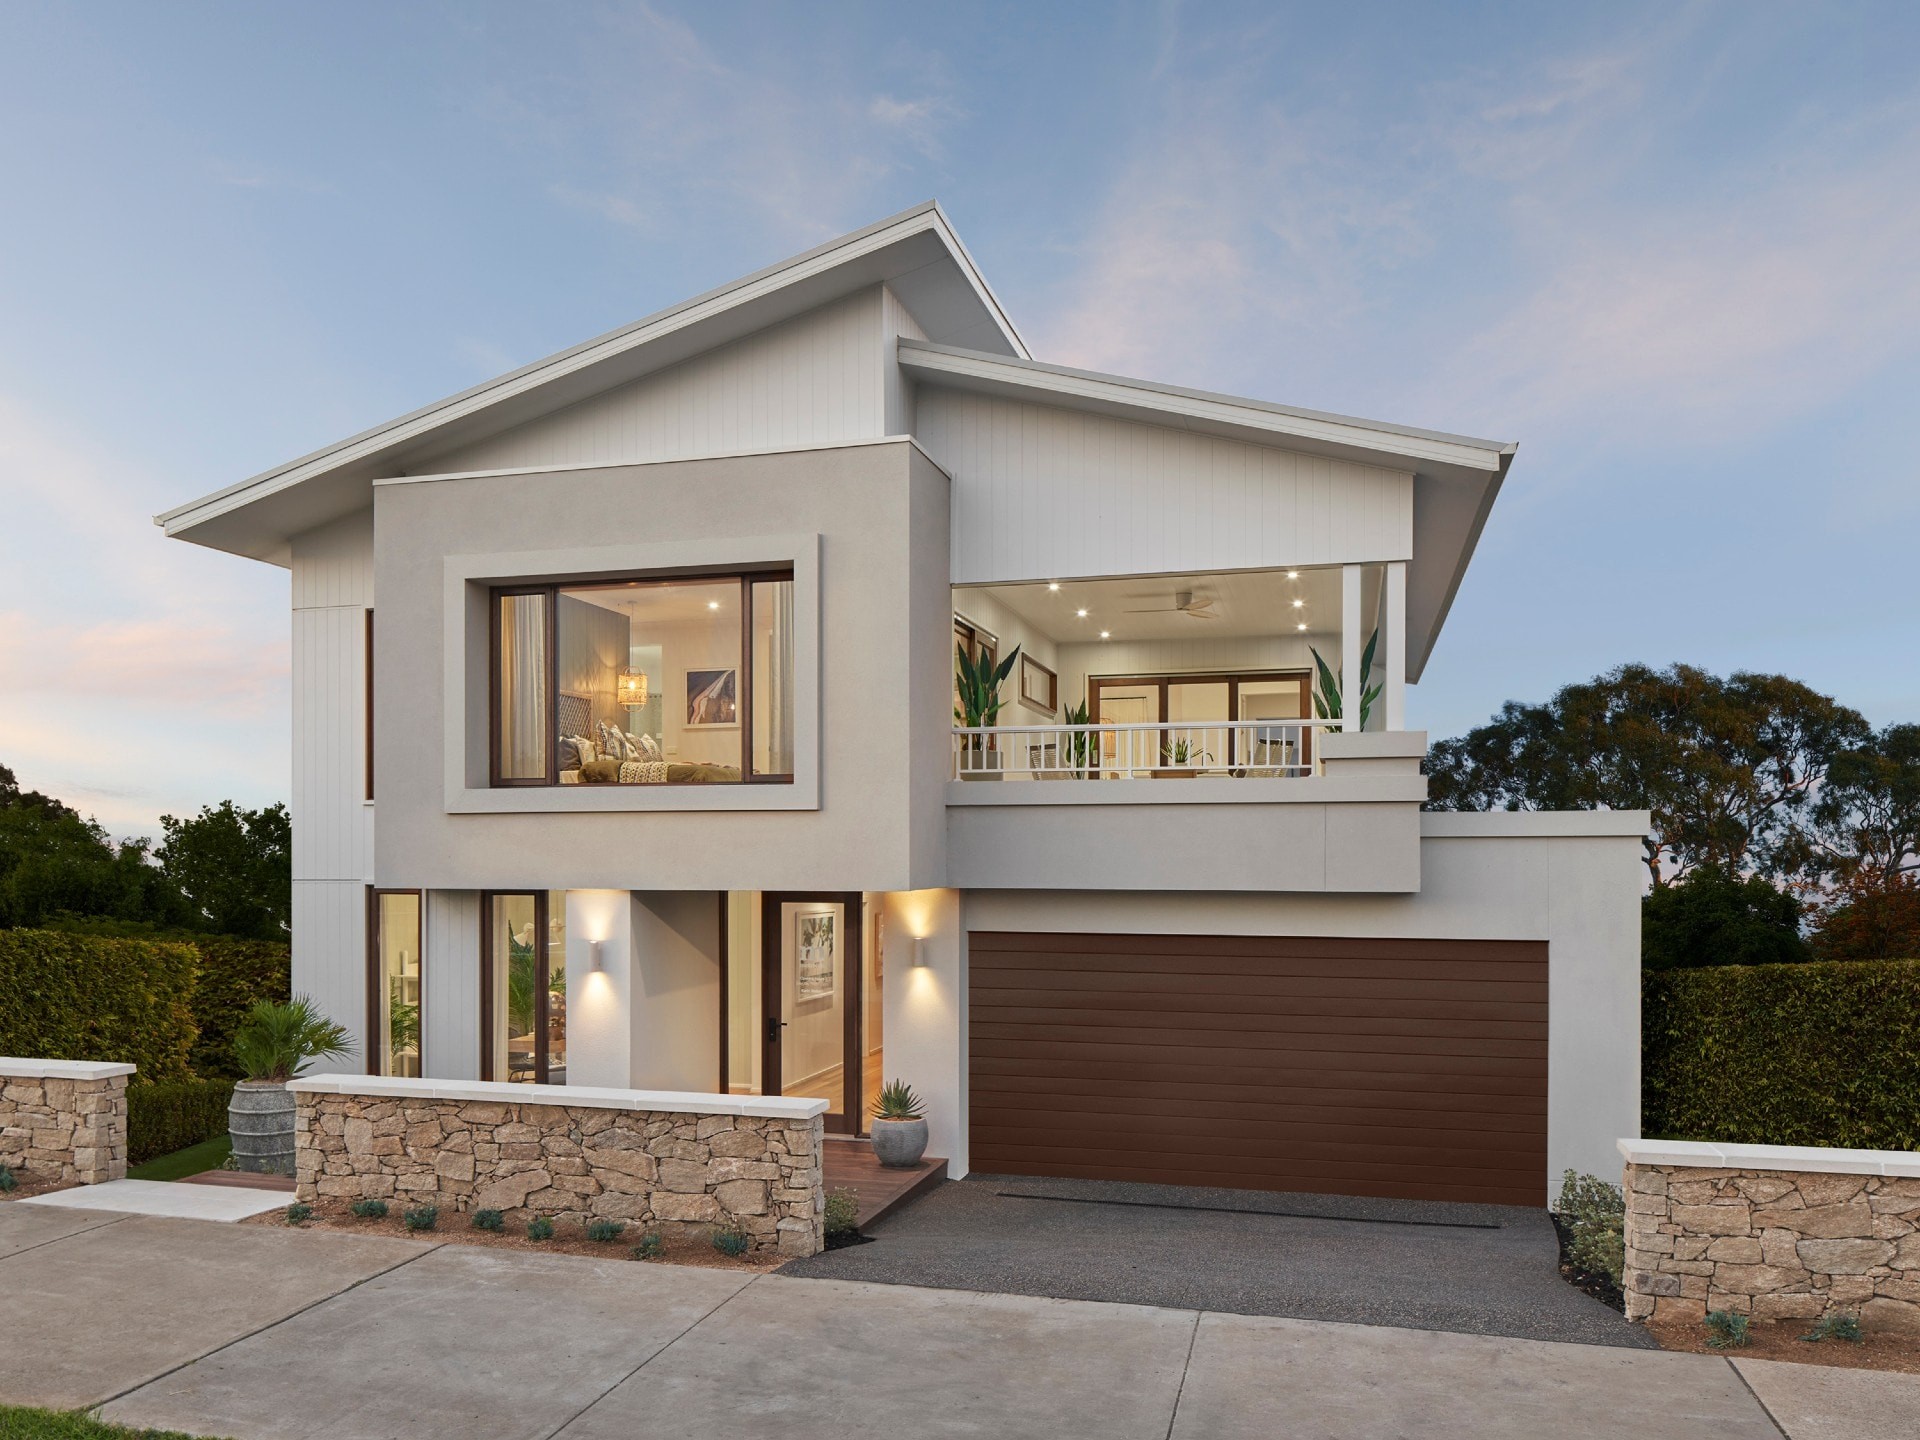 alto modern home facade design metricon homes exterior landscaping